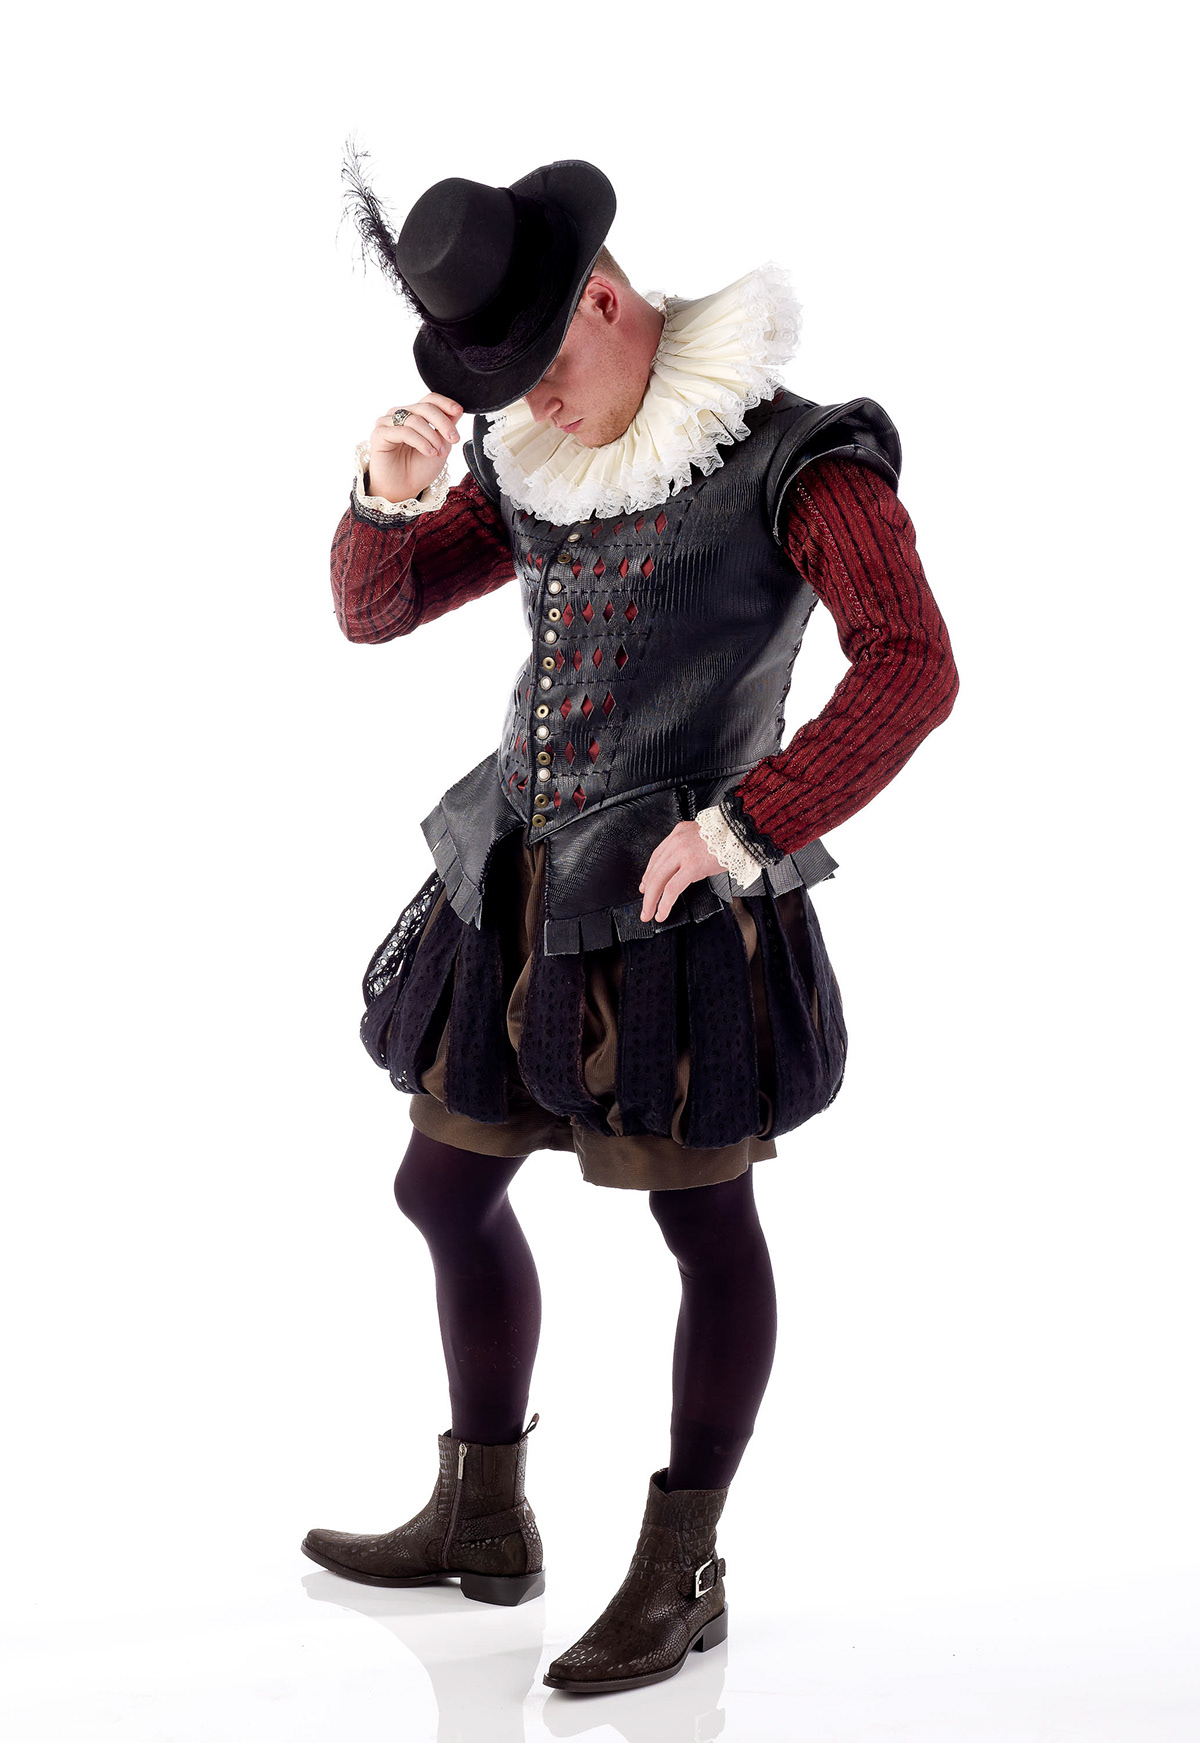 Renaissance elizabethan costume hat historical period men's